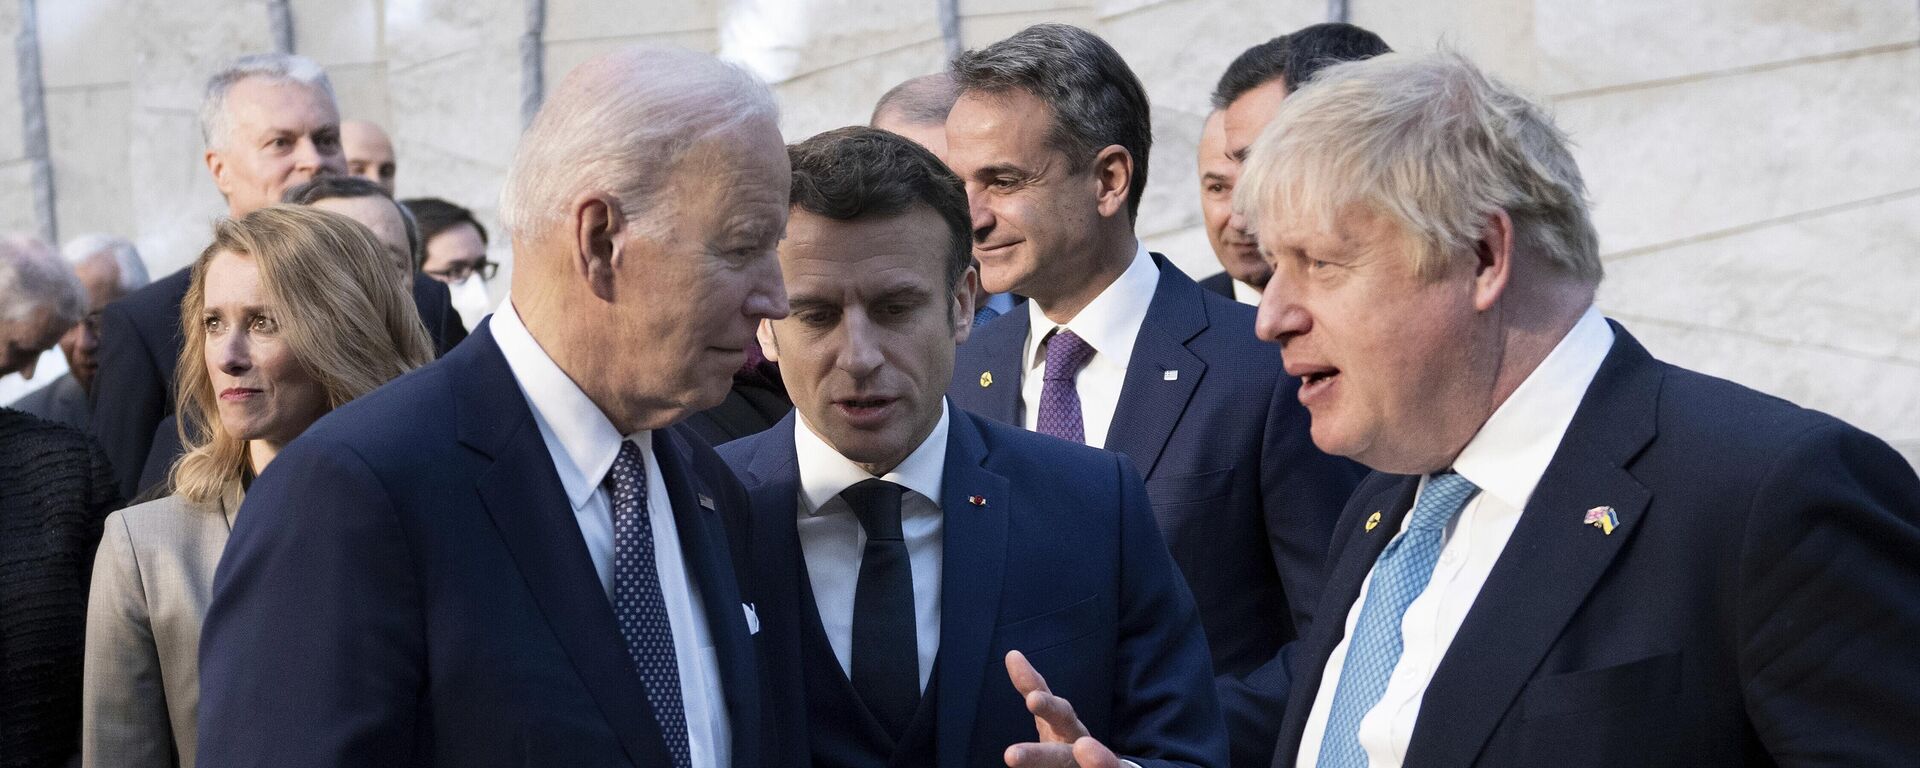 O presidente Joe Biden, à esquerda, conversa com o presidente francês Emmanuel Macron e o primeiro-ministro britânico Boris Johnson, à direita, ao chegarem à sede da OTAN em Bruxelas, quinta-feira, 24 de março de 2022 - Sputnik Brasil, 1920, 25.03.2022